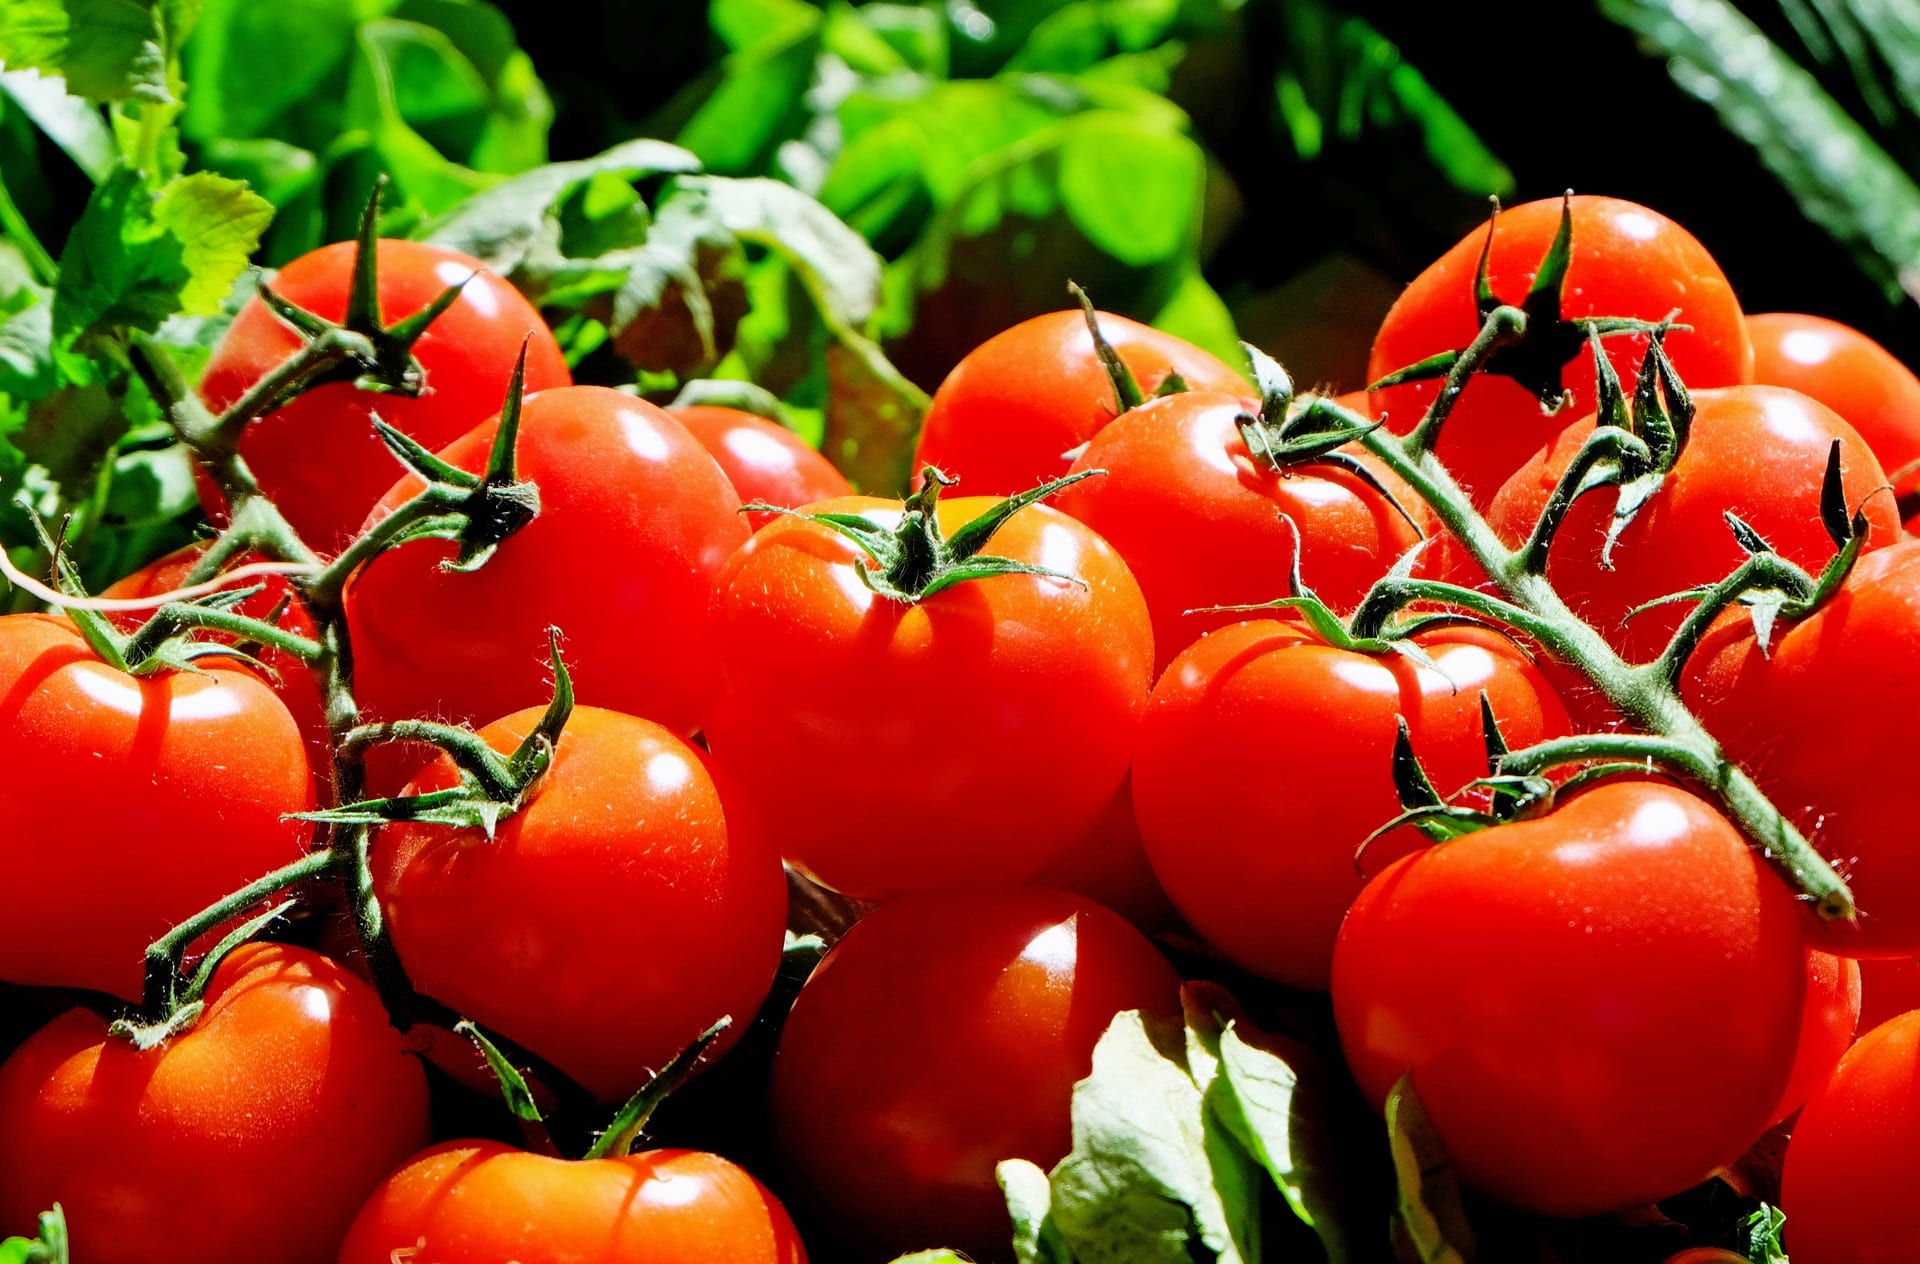 Exportación de tomate a Reino Unido: se mantuvo estable pese al Brexit